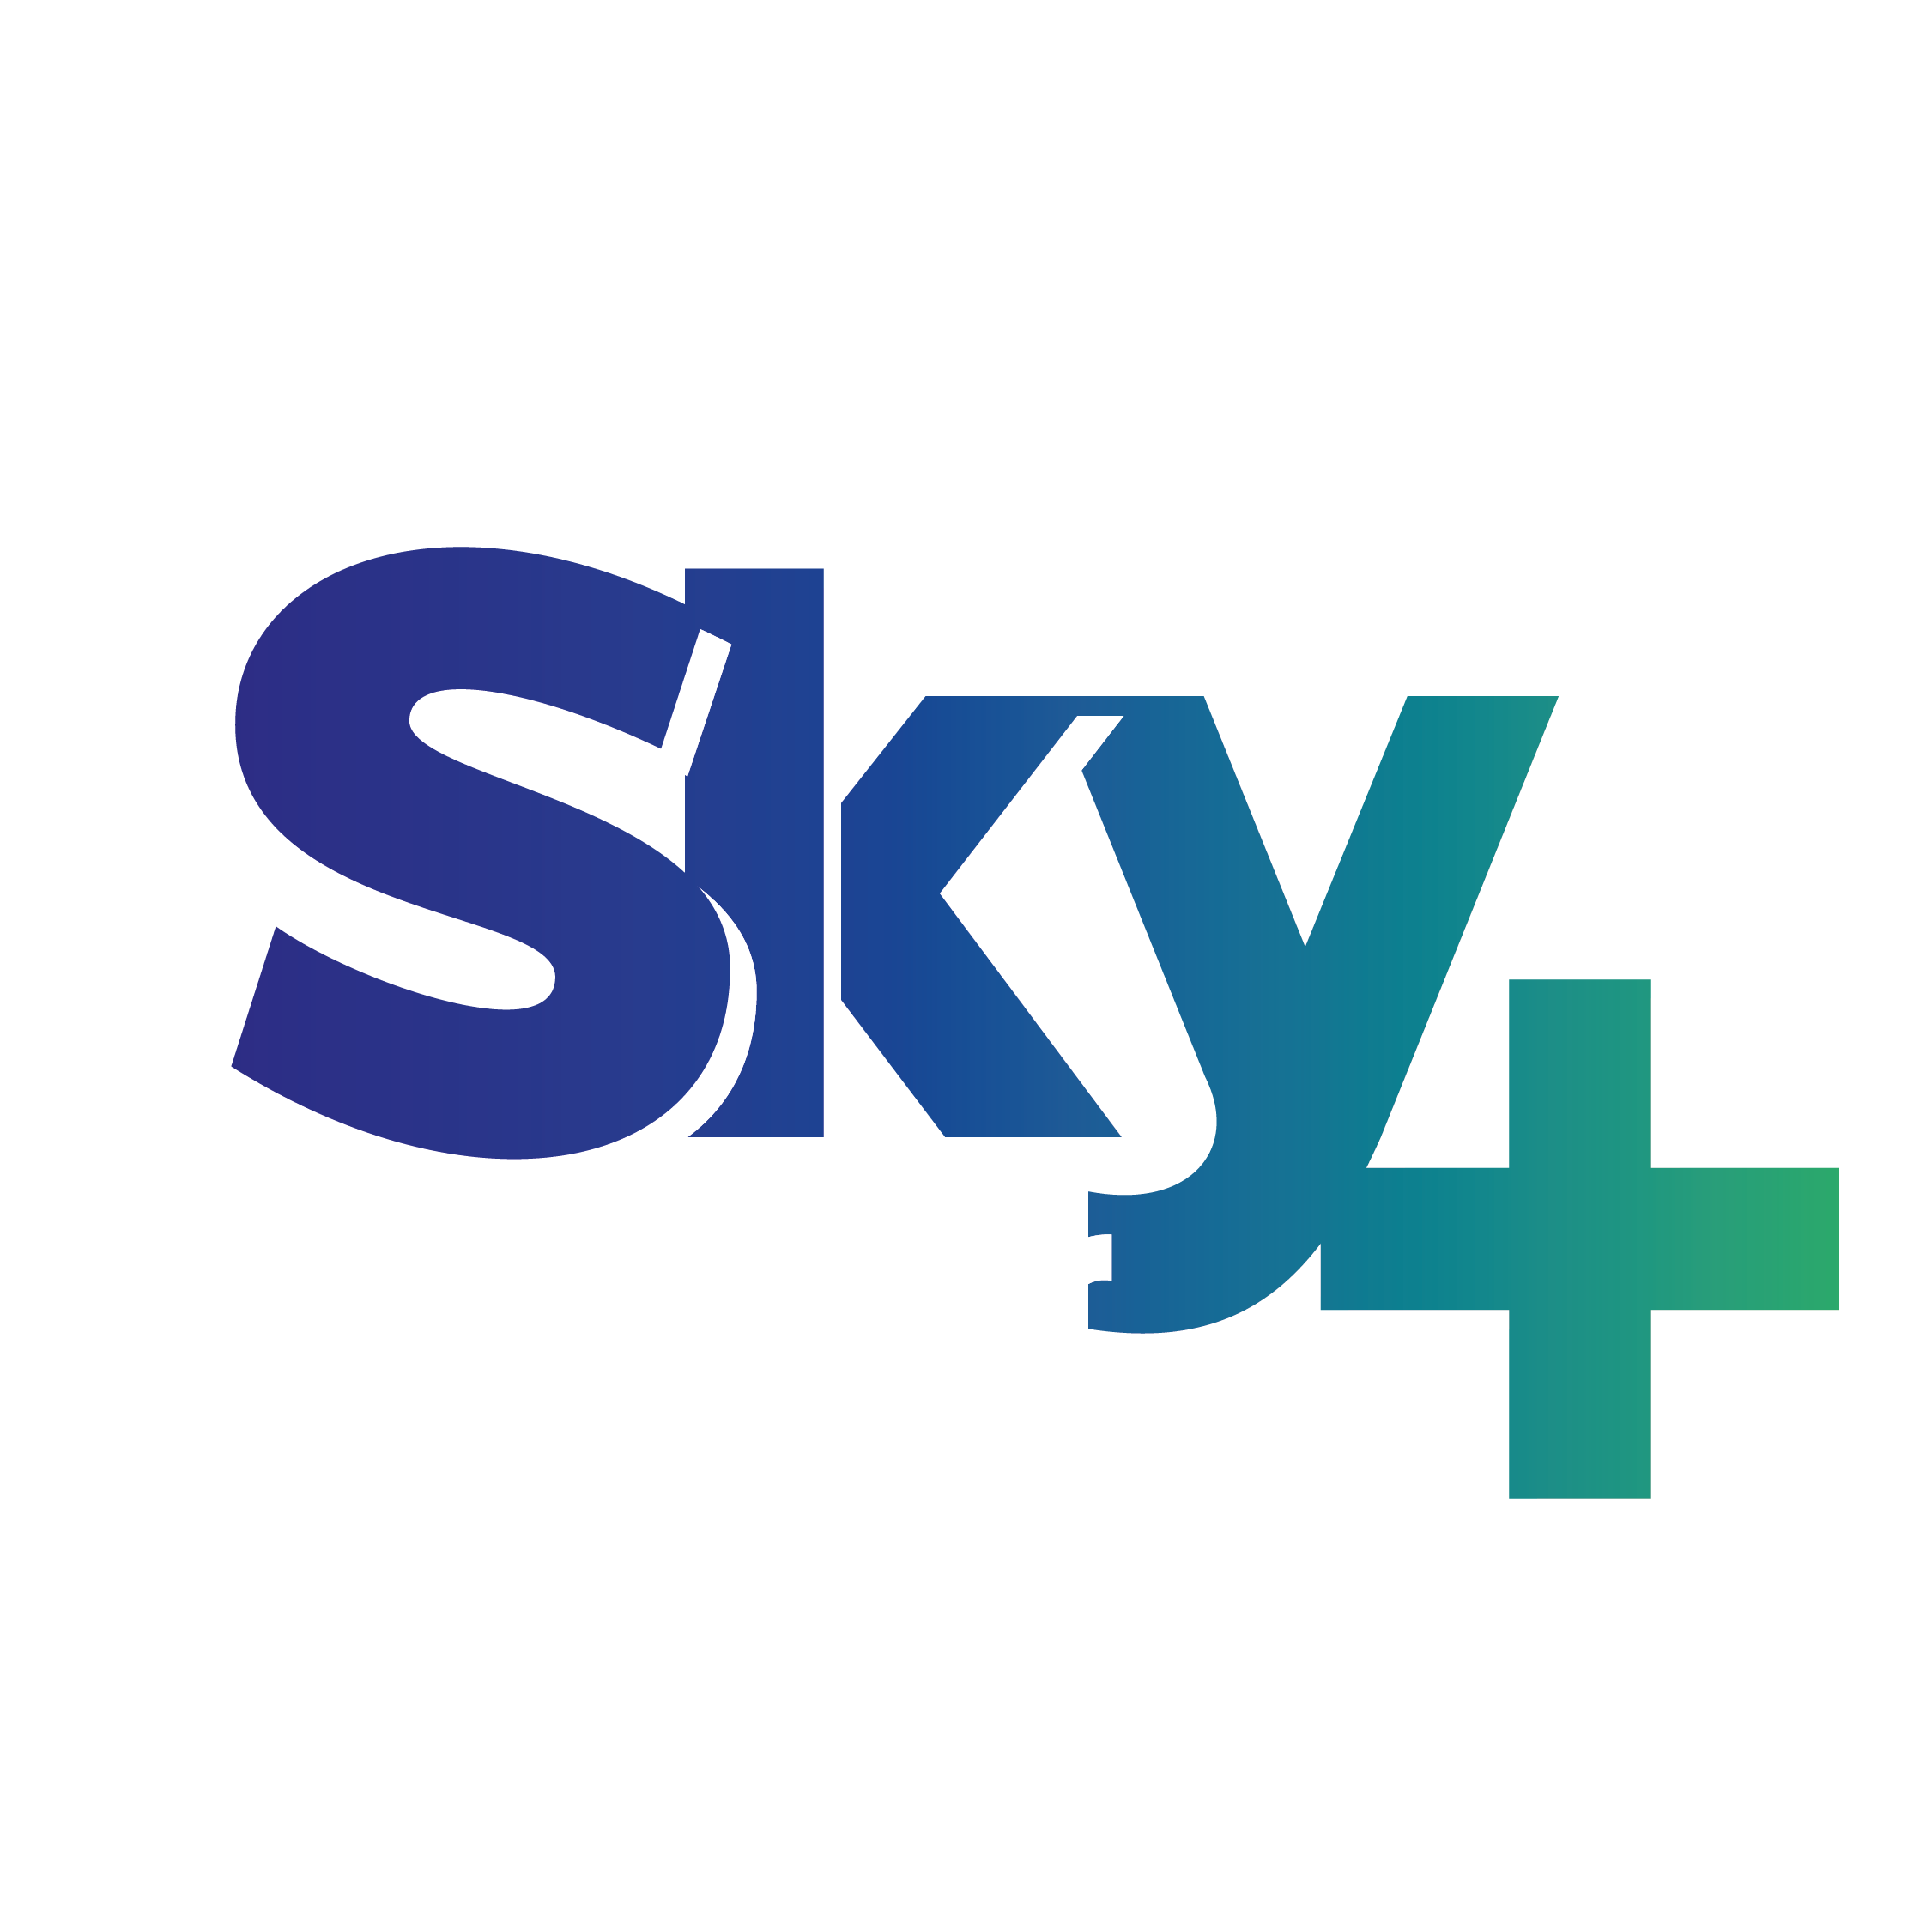 The Sky Doctors